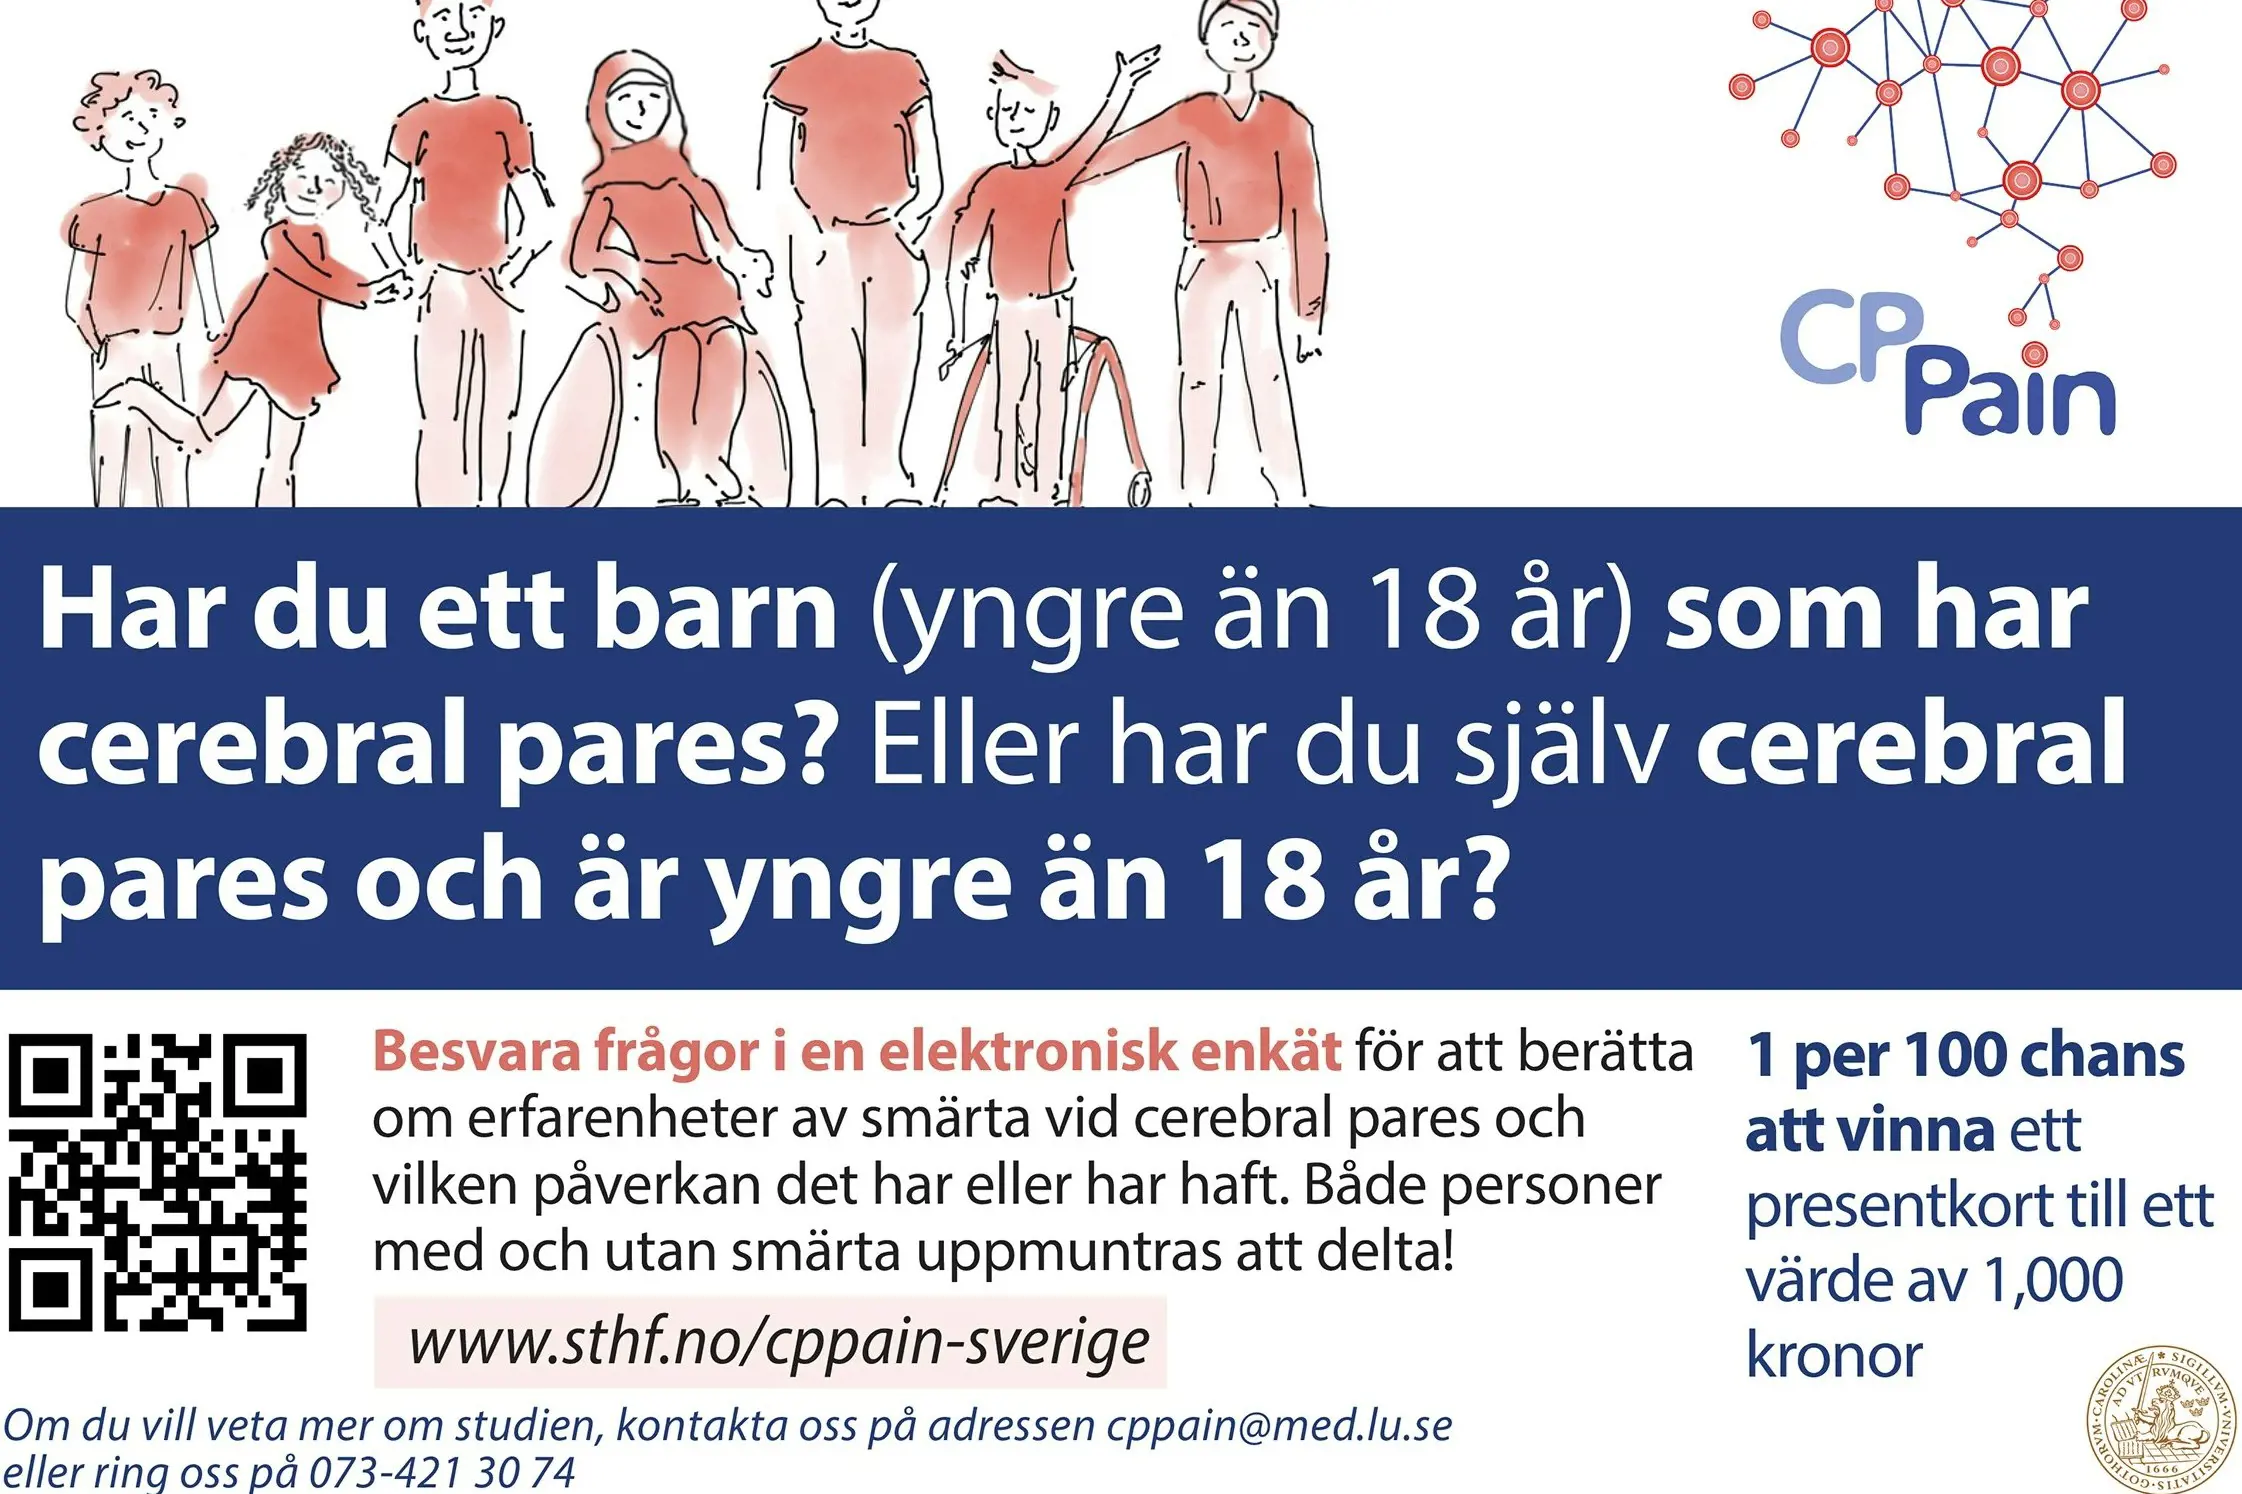 Har du ett barn (yngre än 18 år) som har cerebral pares? Eller har du själv cerebral pares och är yngre än 18 år?